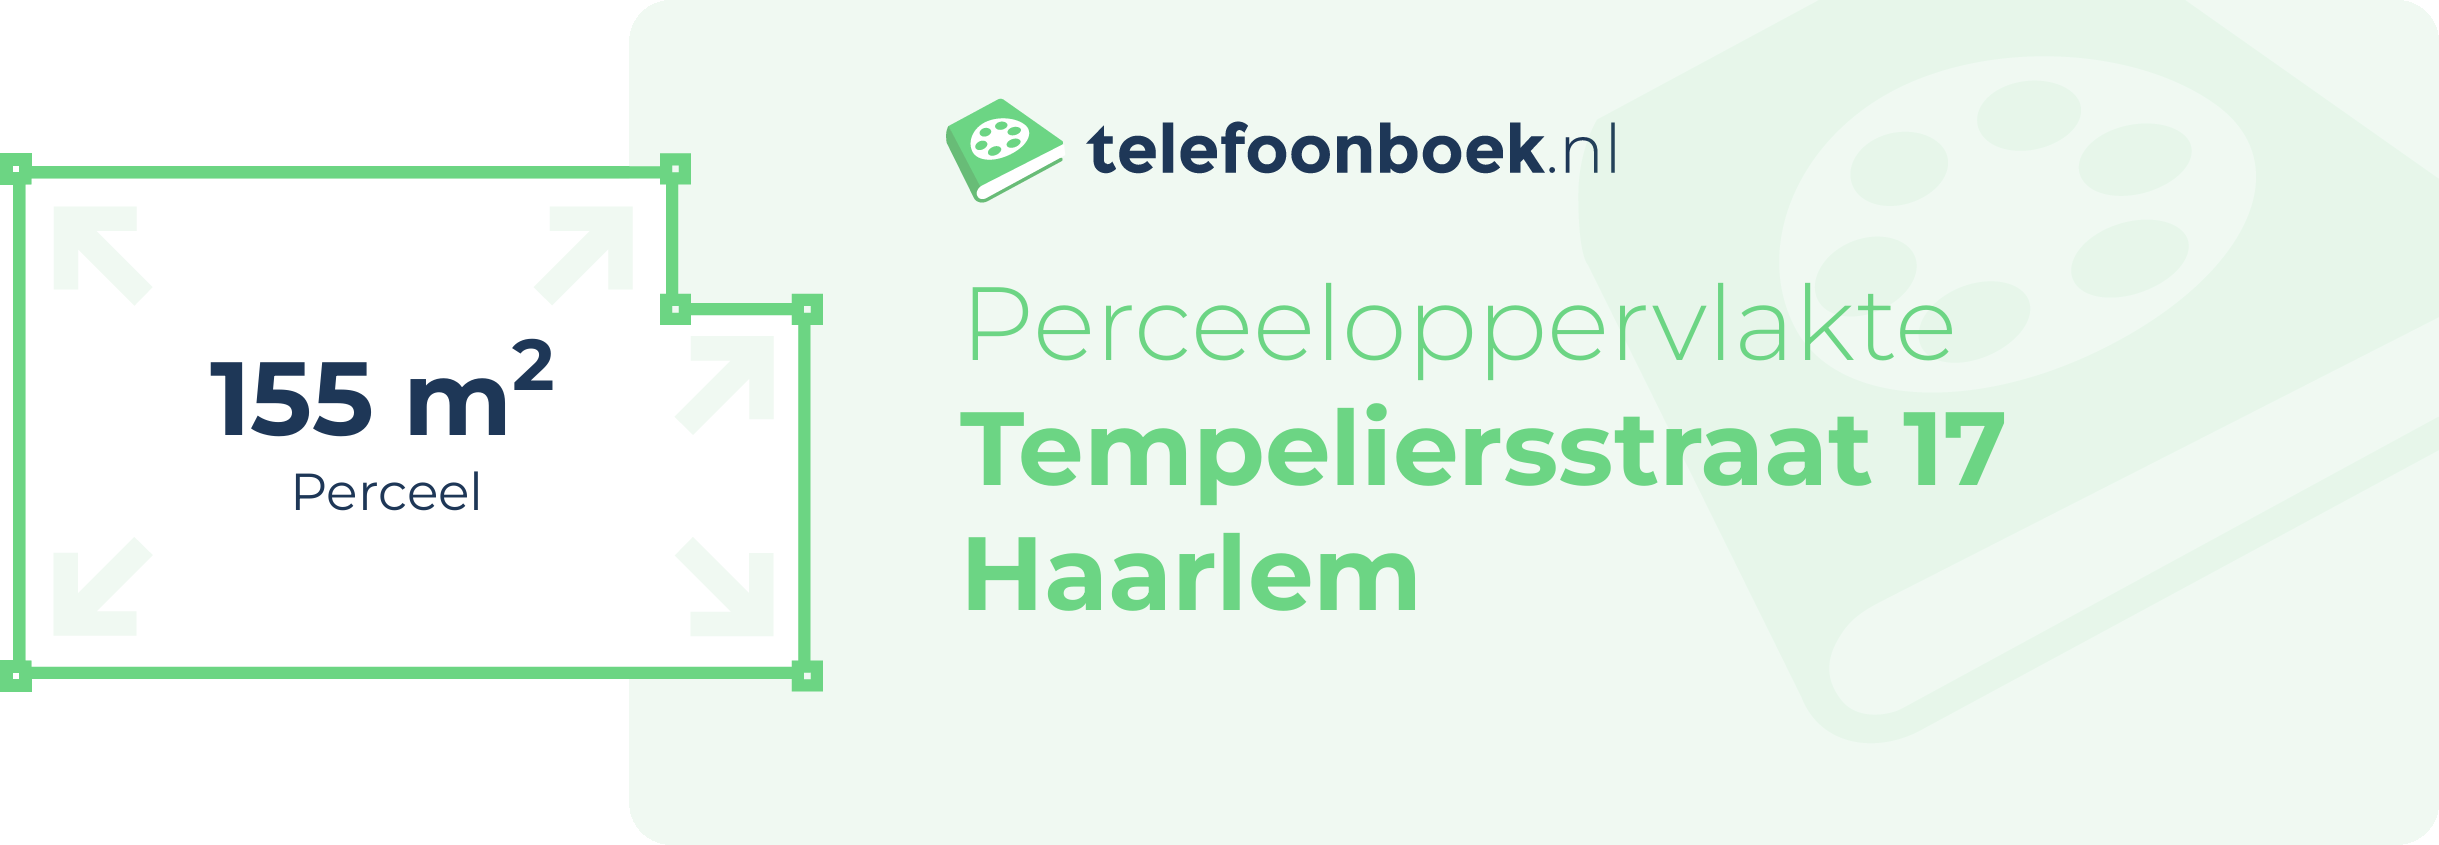 Perceeloppervlakte Tempeliersstraat 17 Haarlem